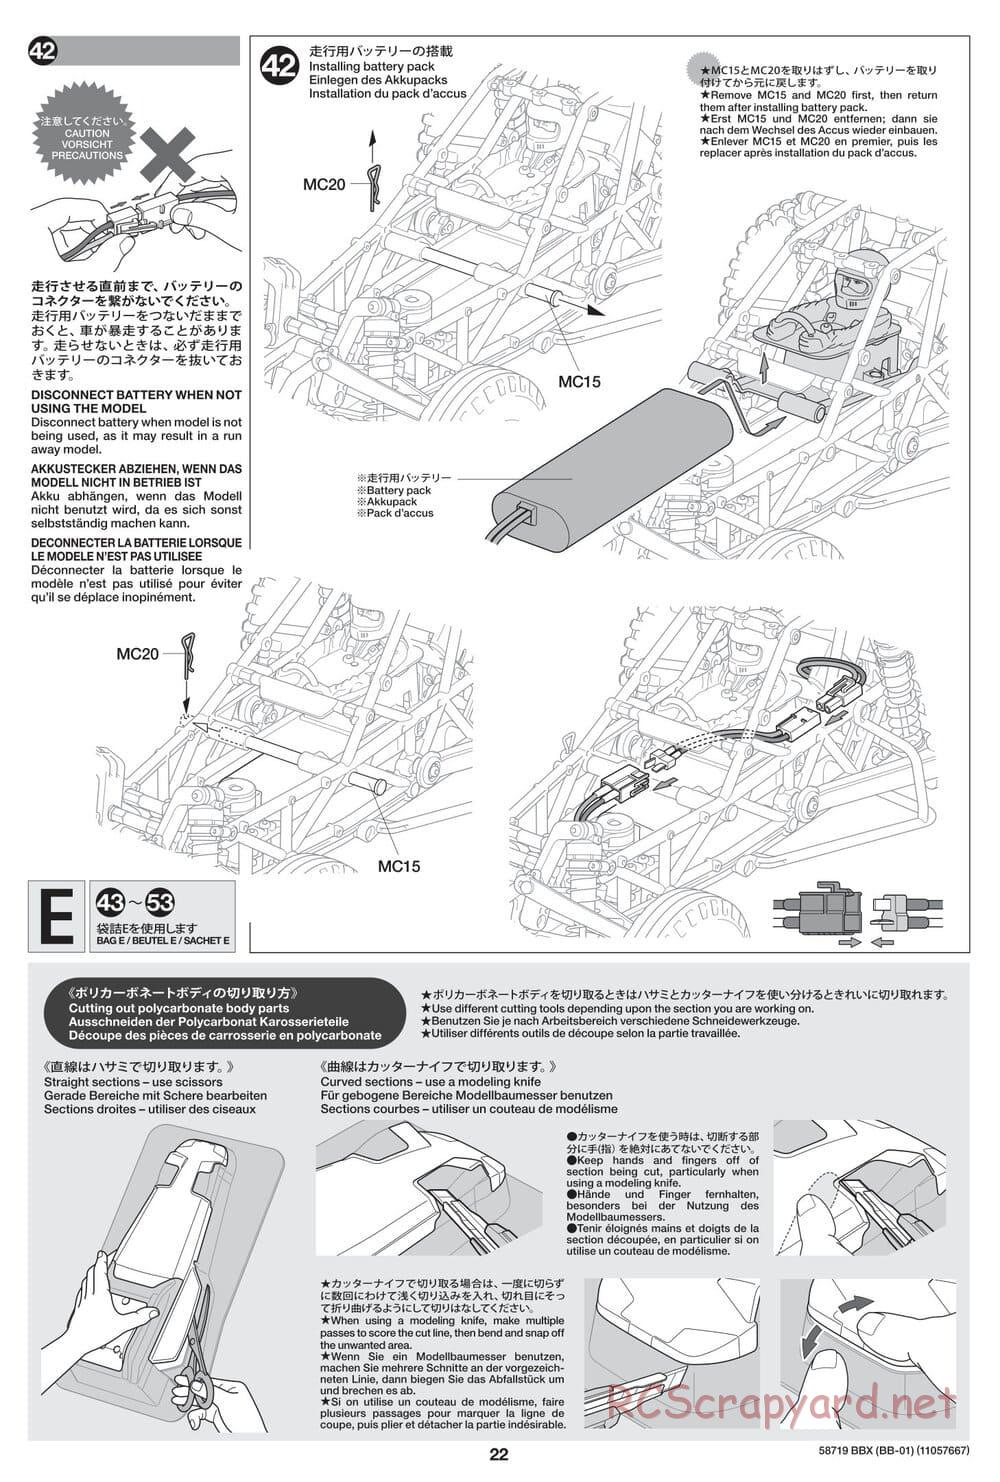 Tamiya - BBX - BB-01 Chassis - Manual - Page 22